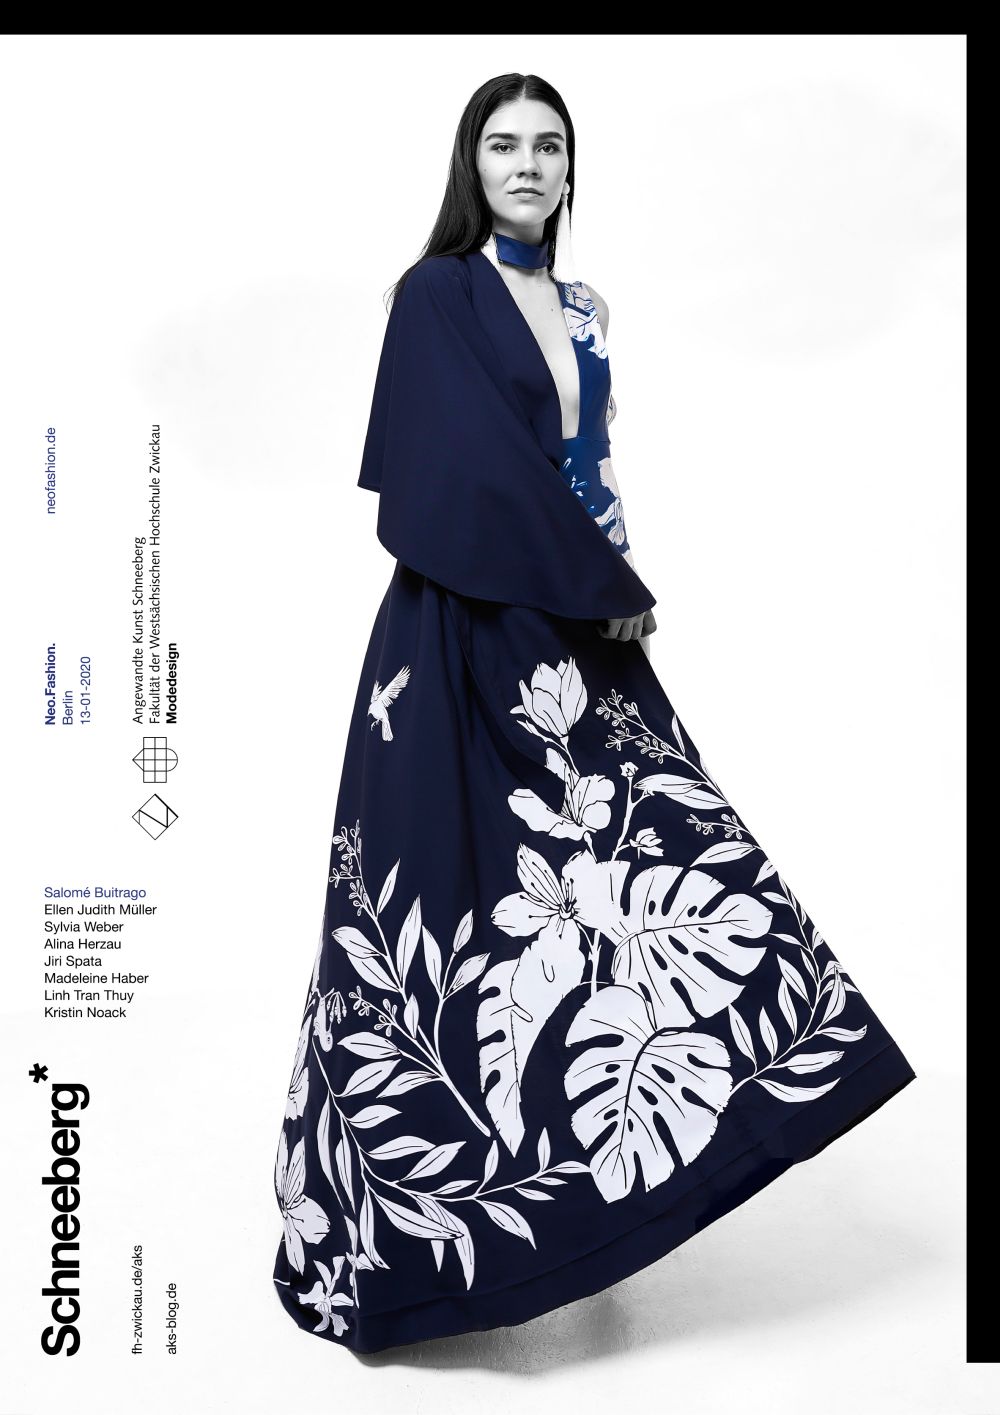 Plakat: Ein Model stehend mit einem Kleid. Werbung für die Neo Fashion Messe Berlin 2020.